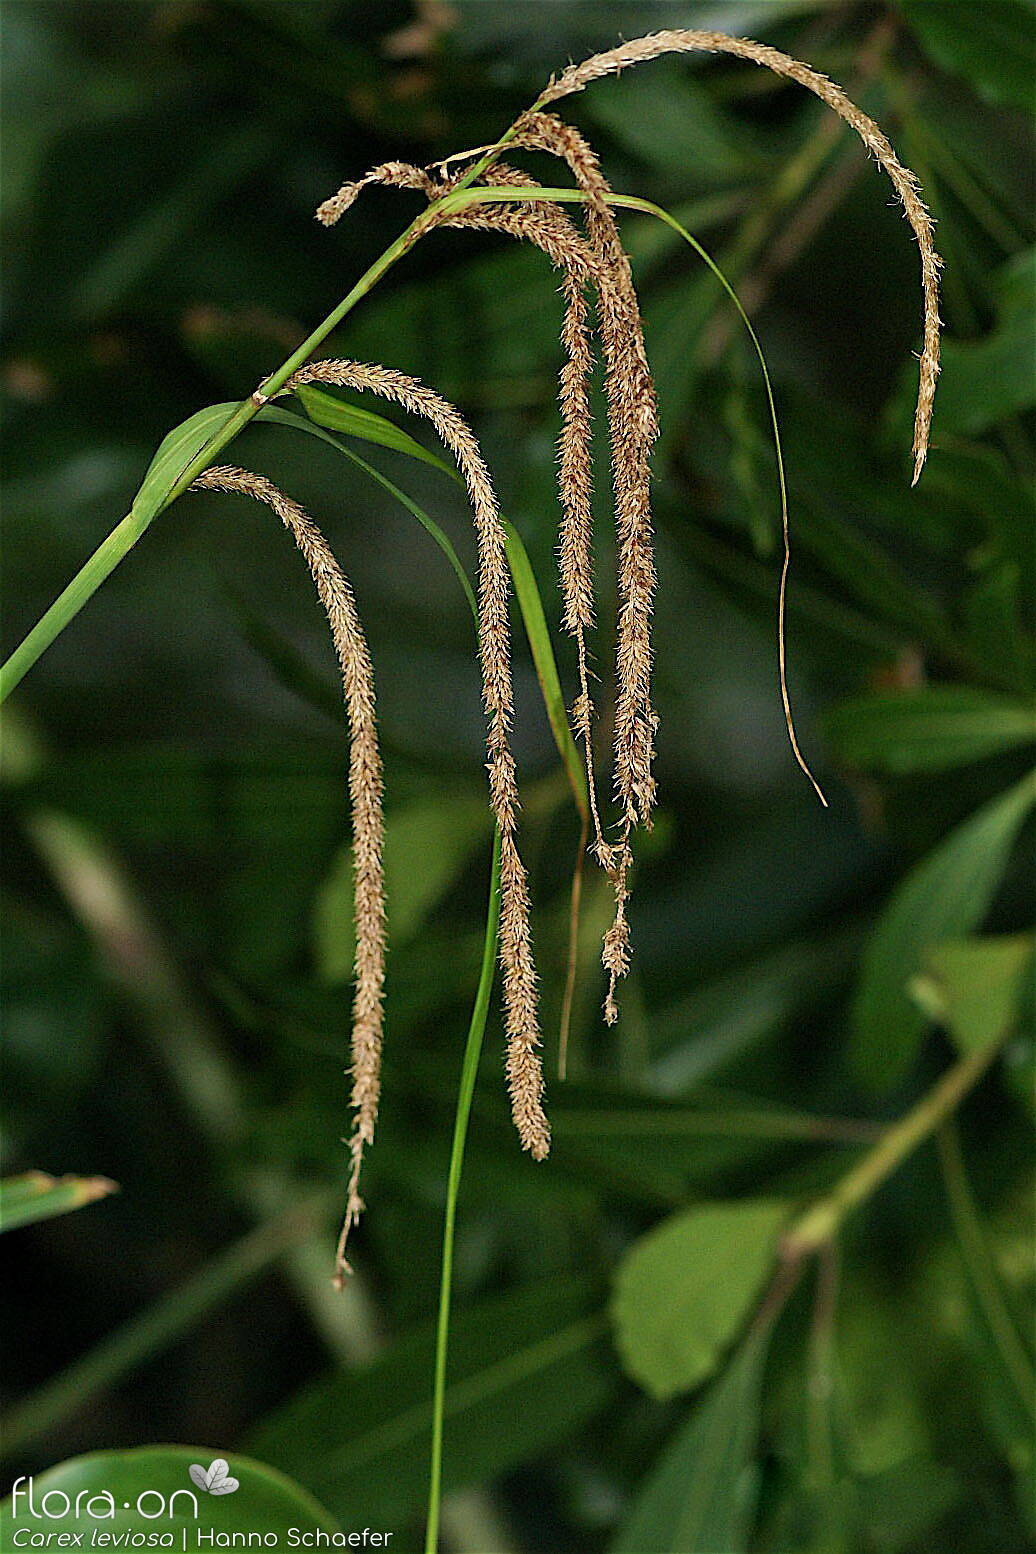 Carex leviosa - Flor (geral) | Hanno Schaefer; CC BY-NC 4.0